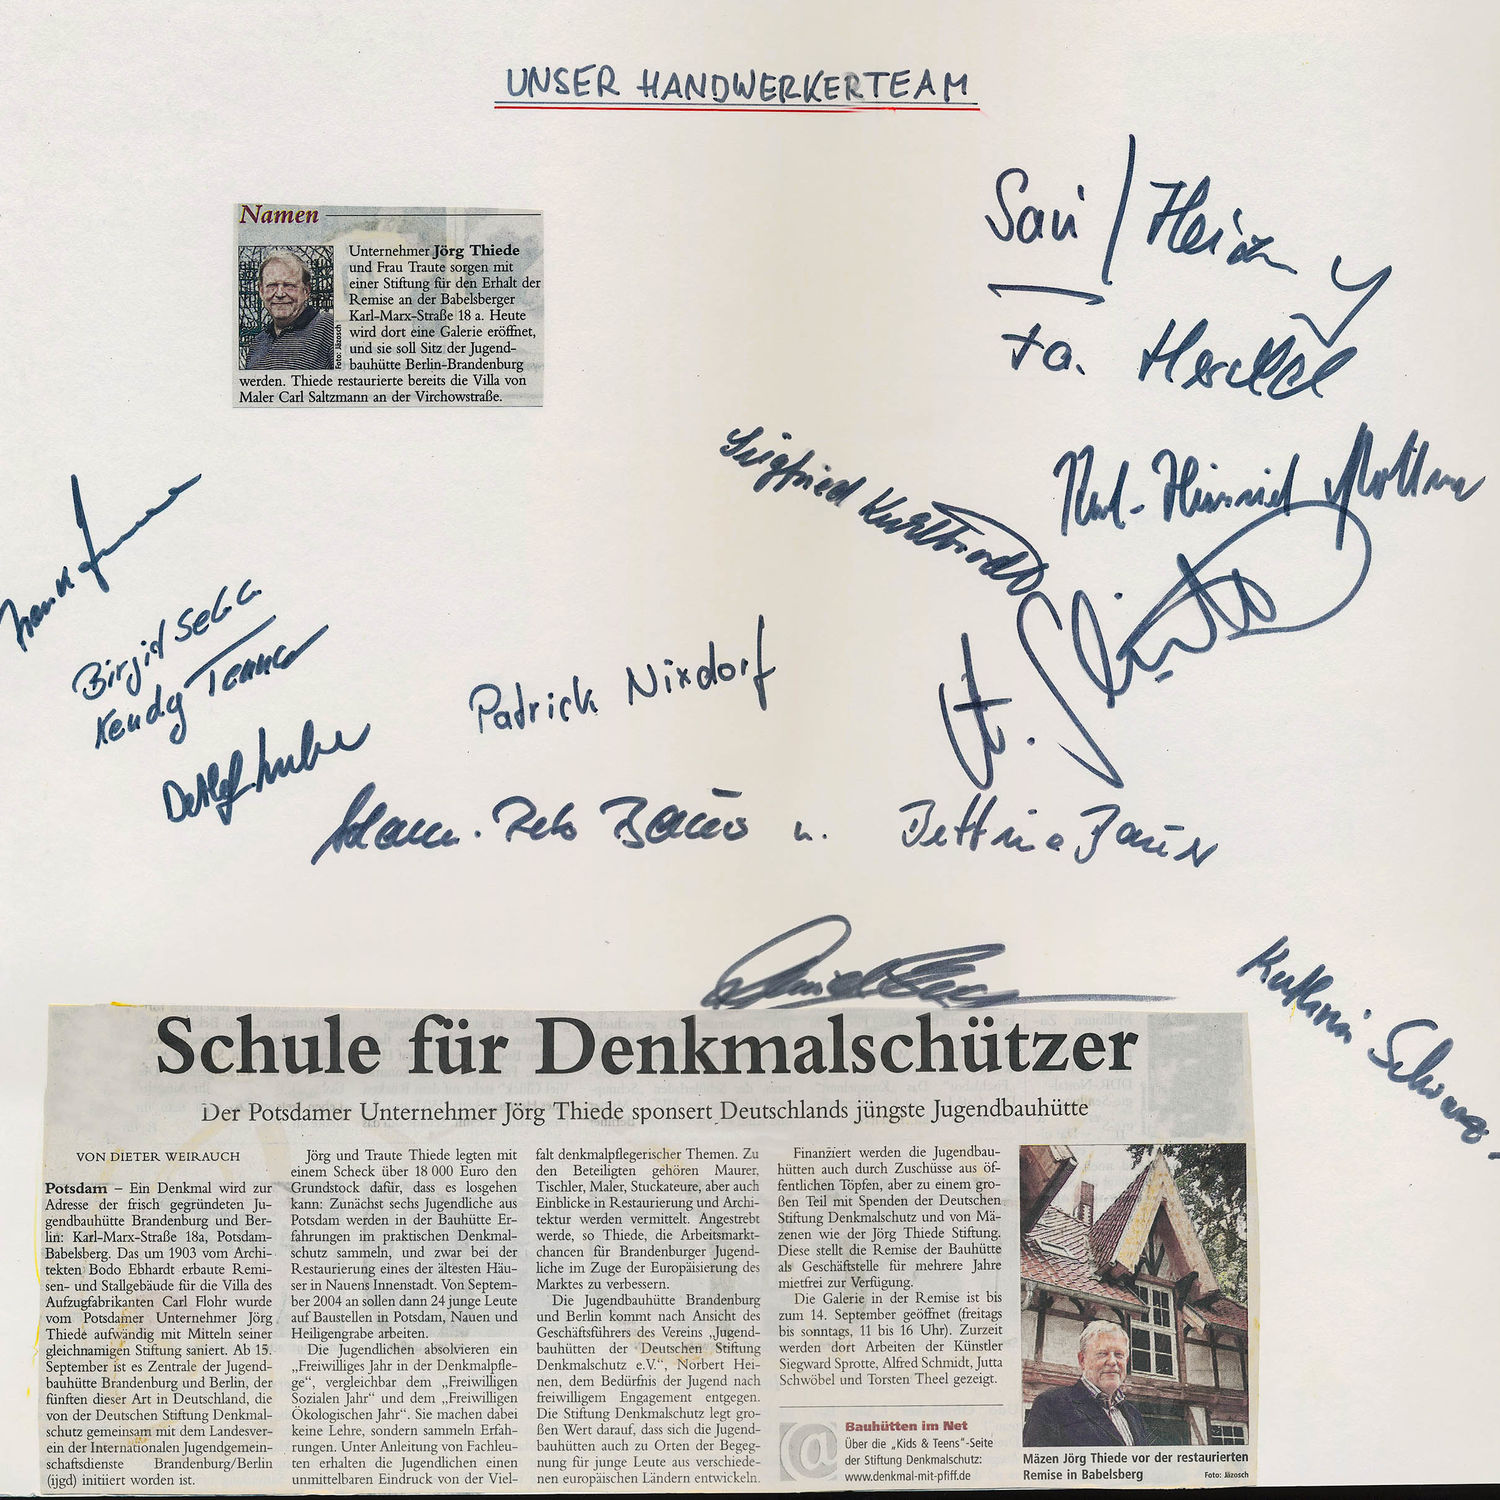 Unser Handwerkerteam / Berliner Morgenpost - "Schule für Denkmalschützer" - 13.09.2003